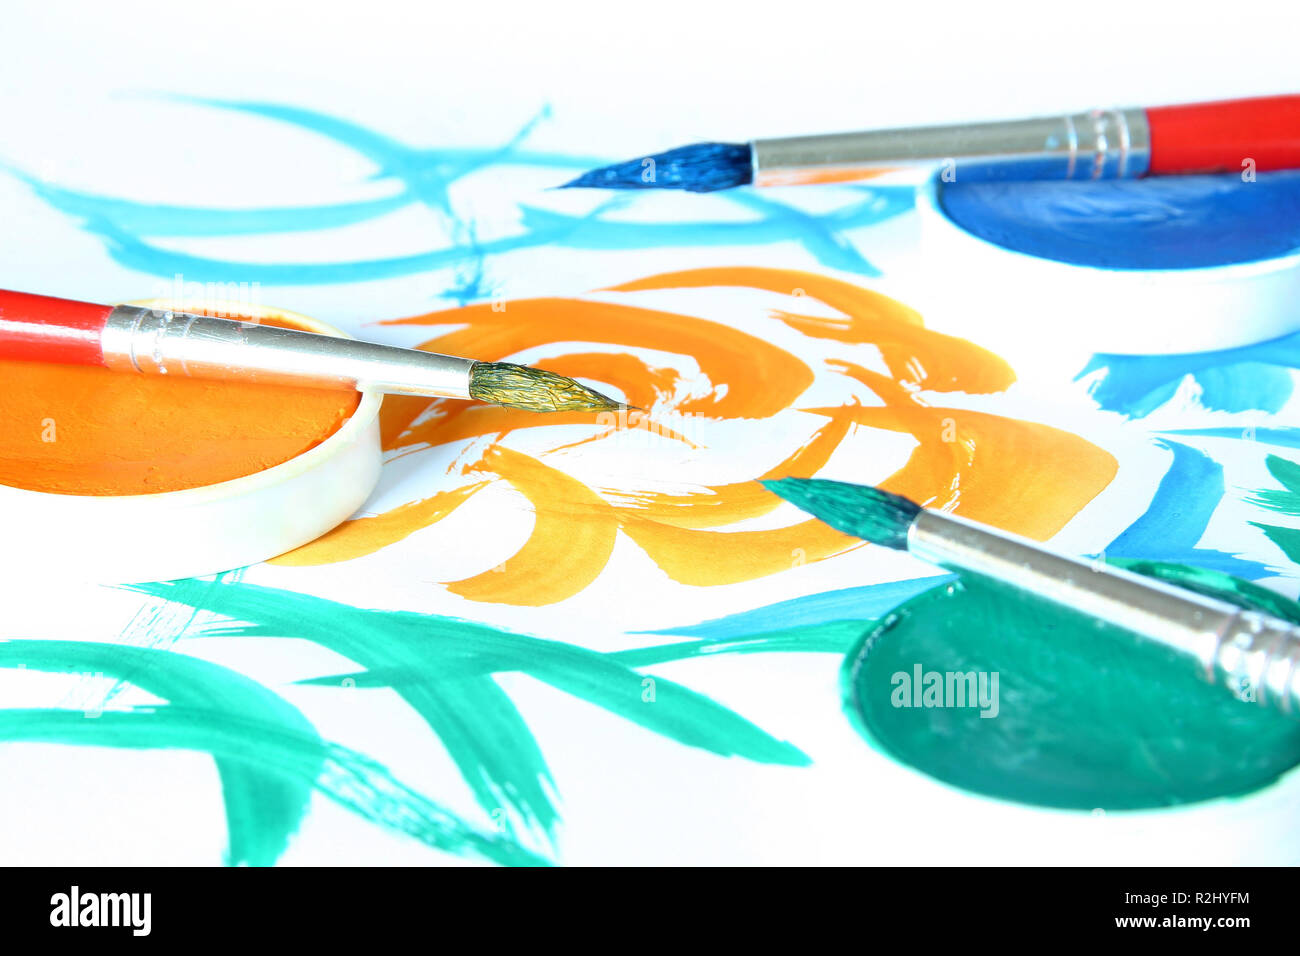 Malen mit Pinsel und Farbe Stockfotografie - Alamy